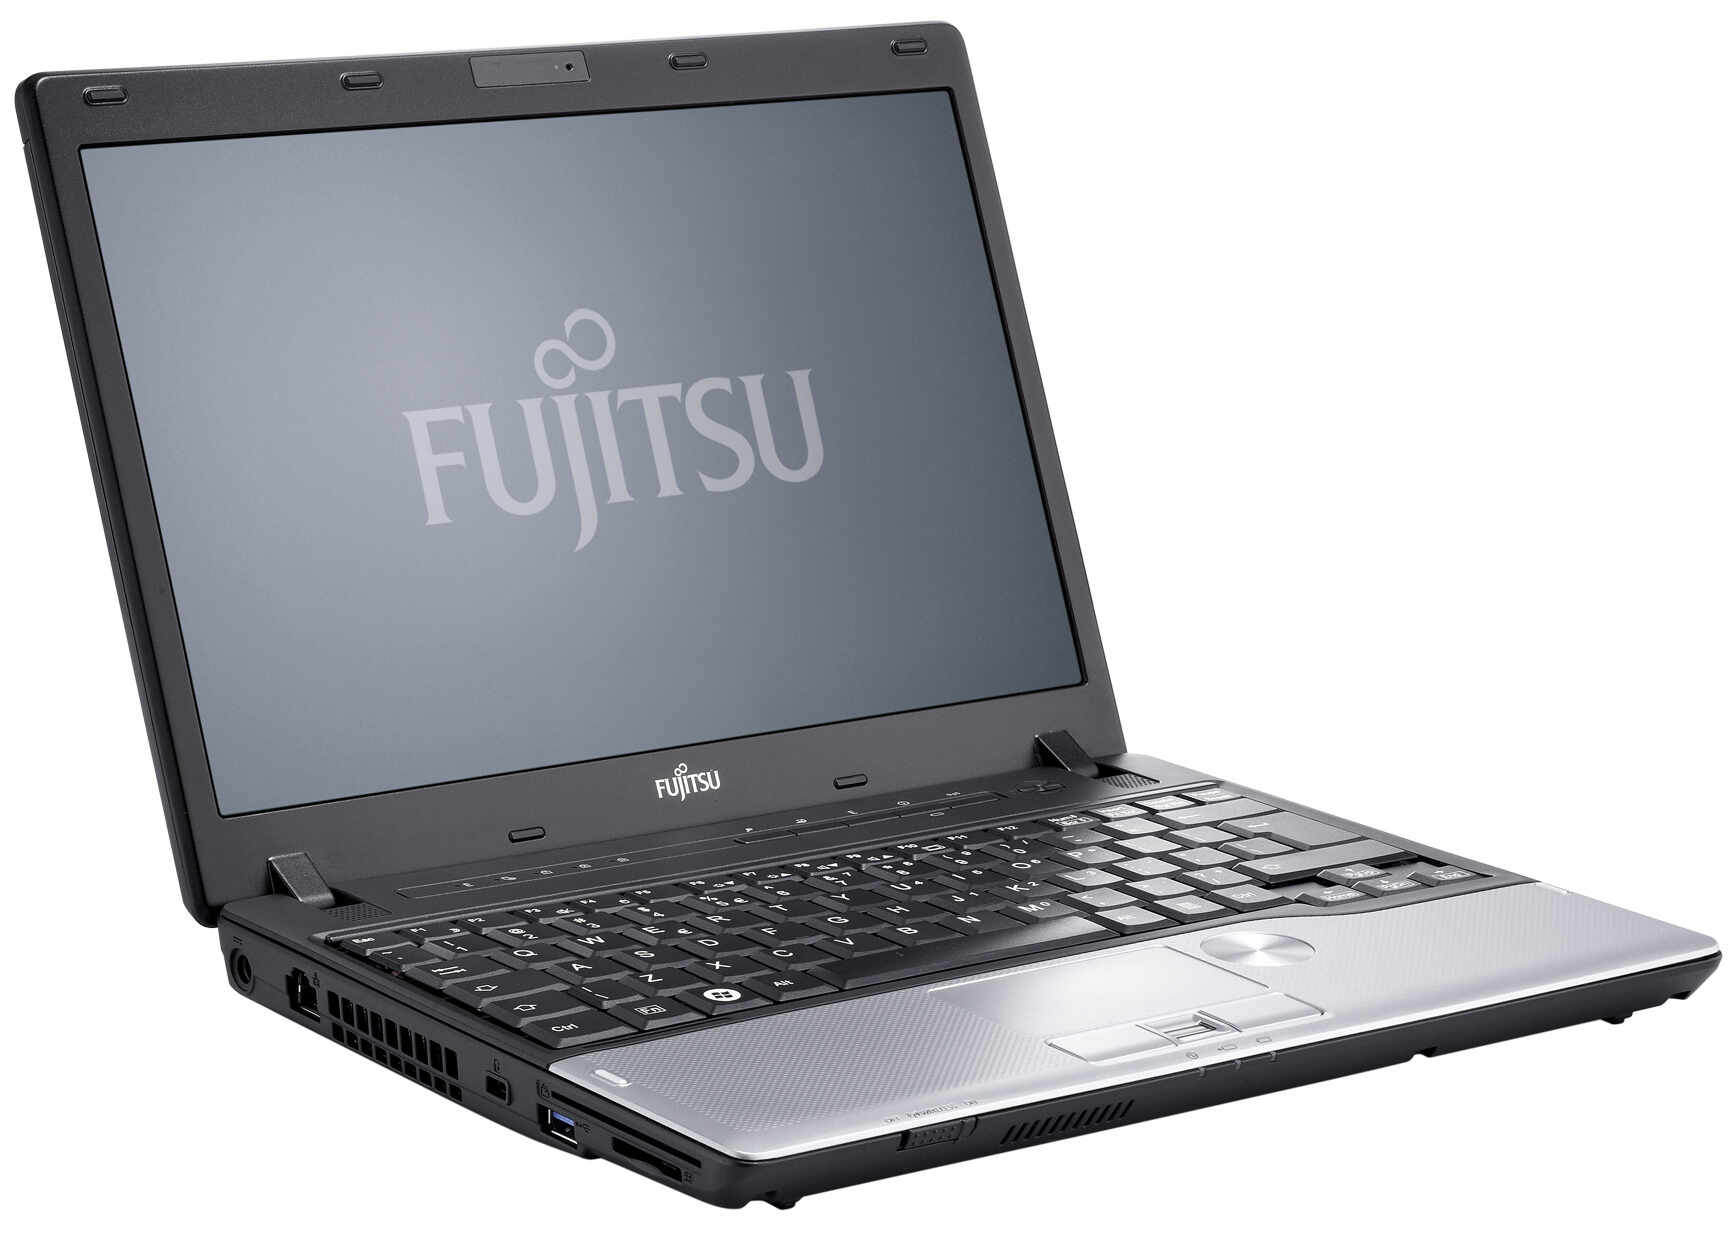 Laptop FUJITSU SIEMENS P702, Intel Core i3-3110M 2.40GHz, 4GB DDR3, 320GB SATA, 12.5 Inch, Webcam